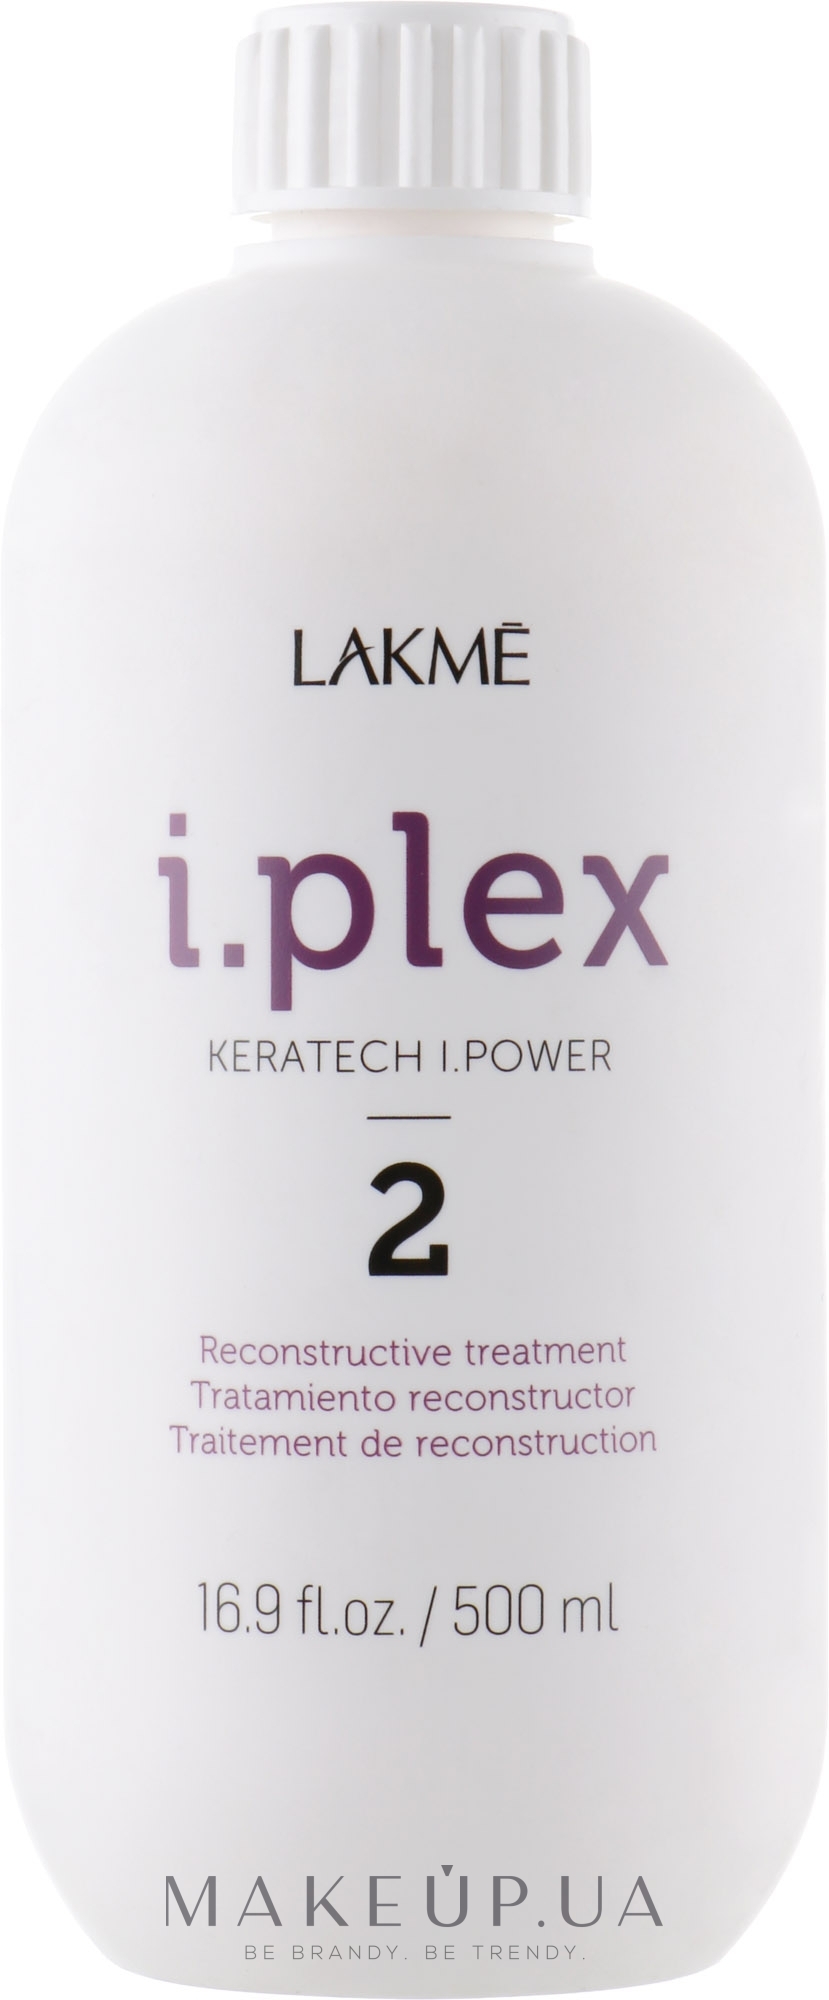 Відновлювальний засіб для волосся - Lakme i.plex Keratech I.Power 2 — фото 500ml